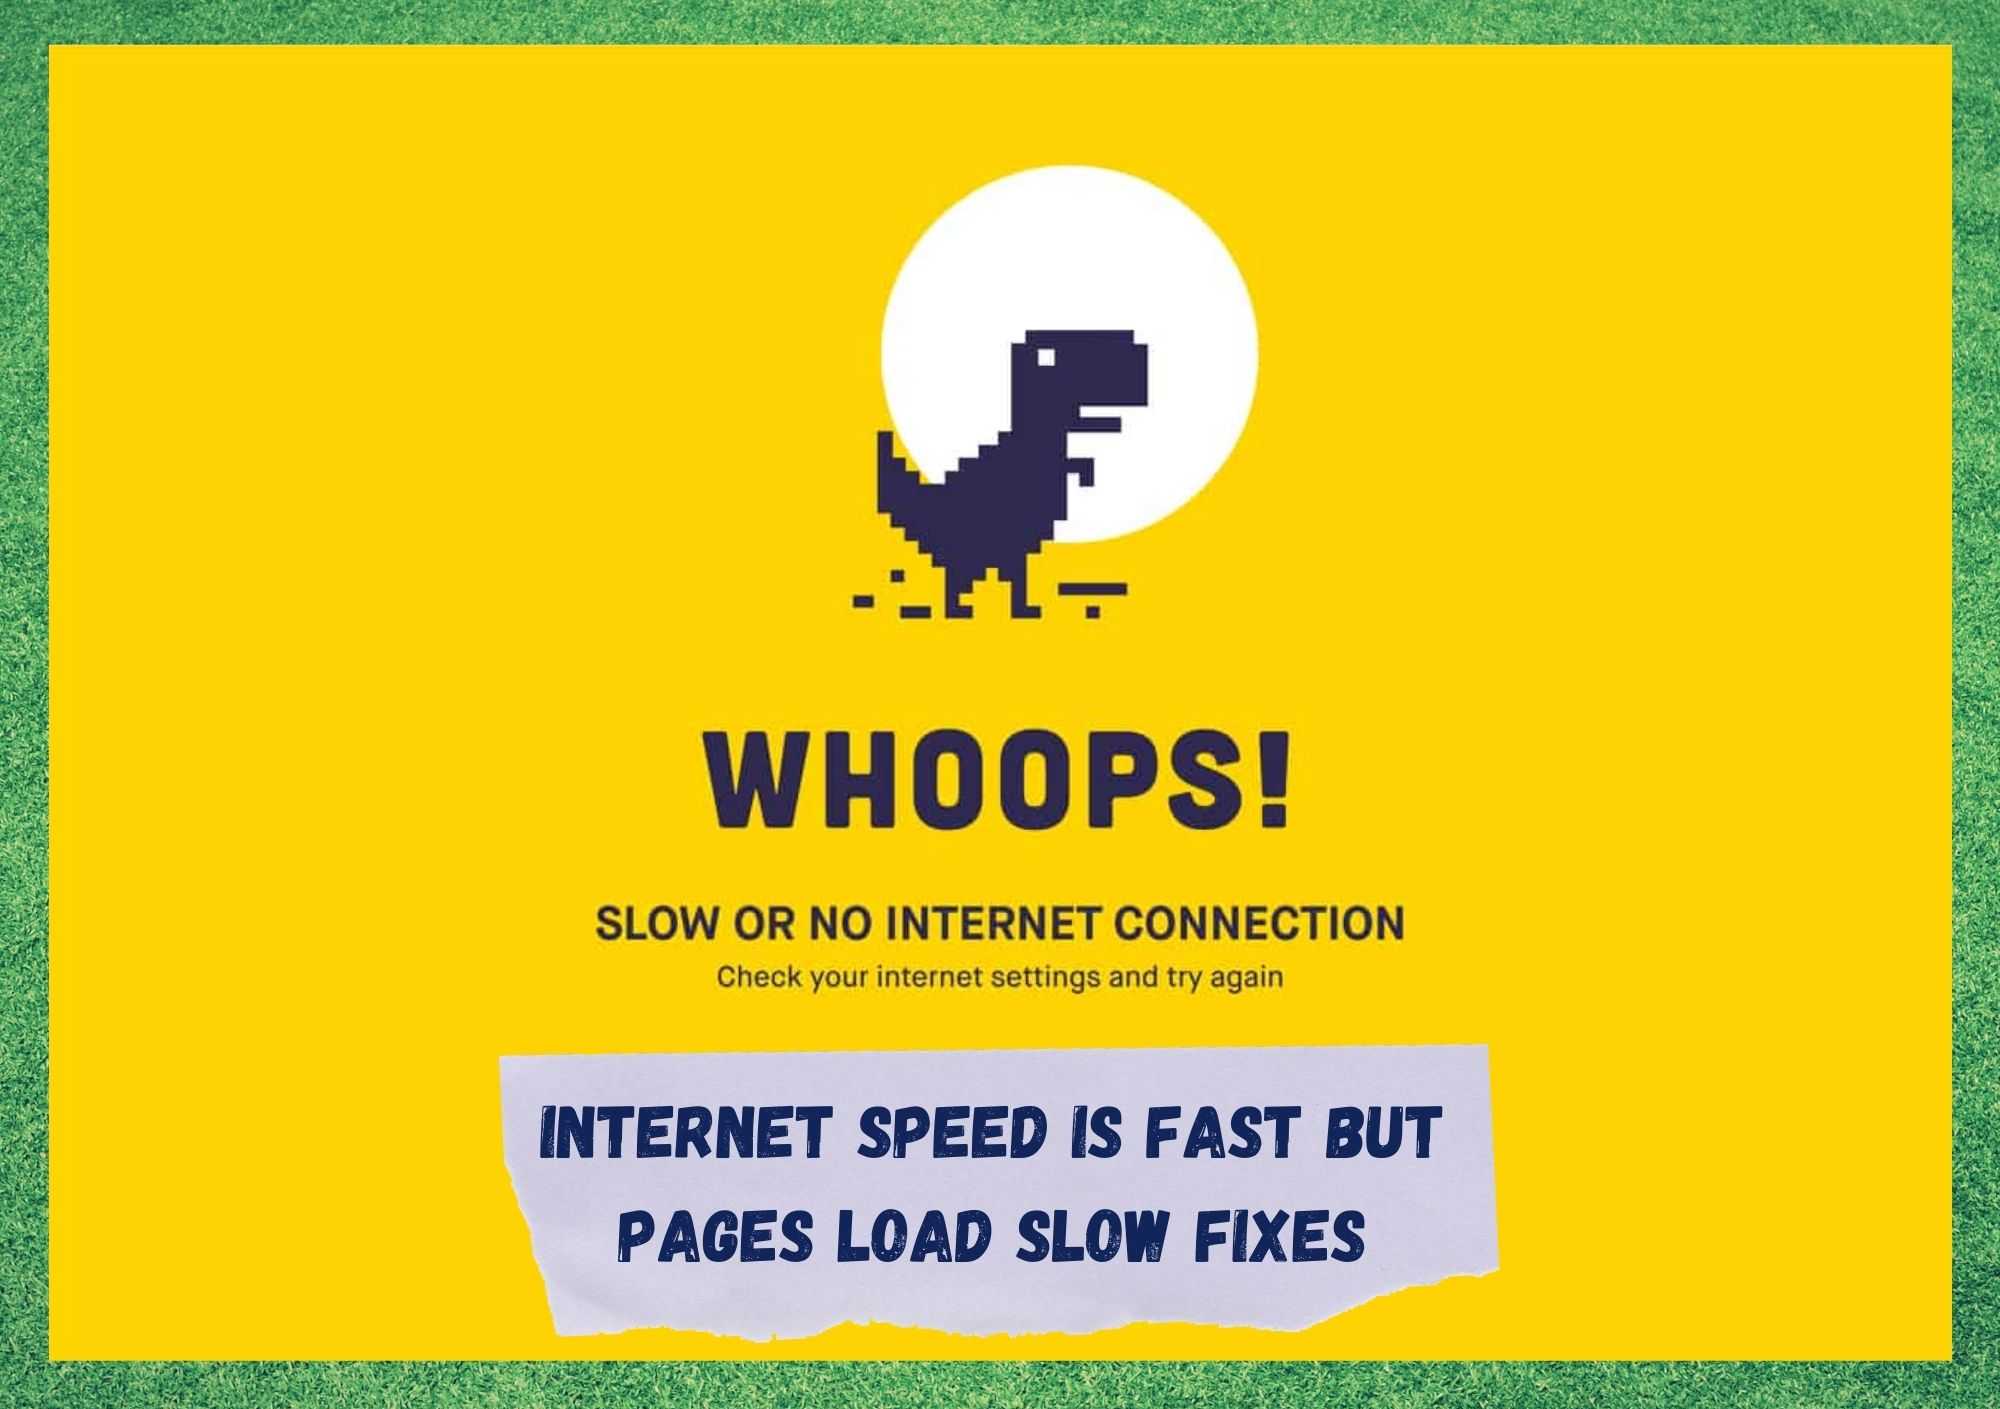 Η ταχύτητα του Internet είναι γρήγορη αλλά οι σελίδες φορτώνουν αργά Fix